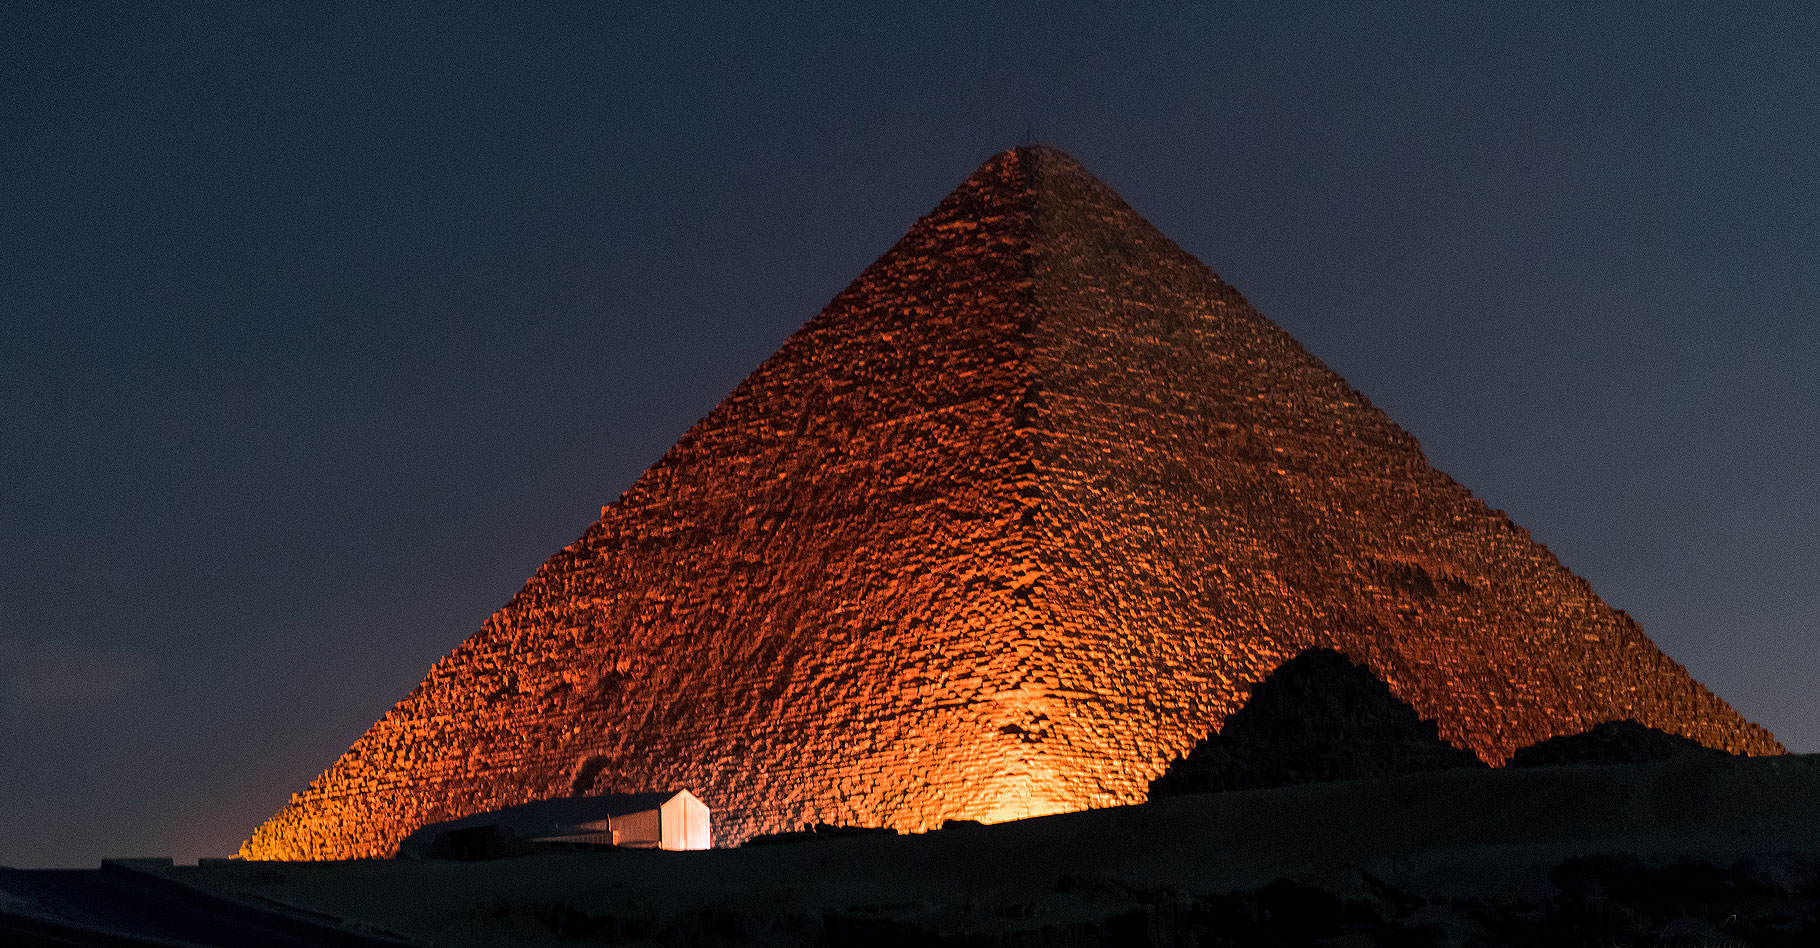 La spectrométrie et la microgravimétrie pour révéler les secrets des pyramides